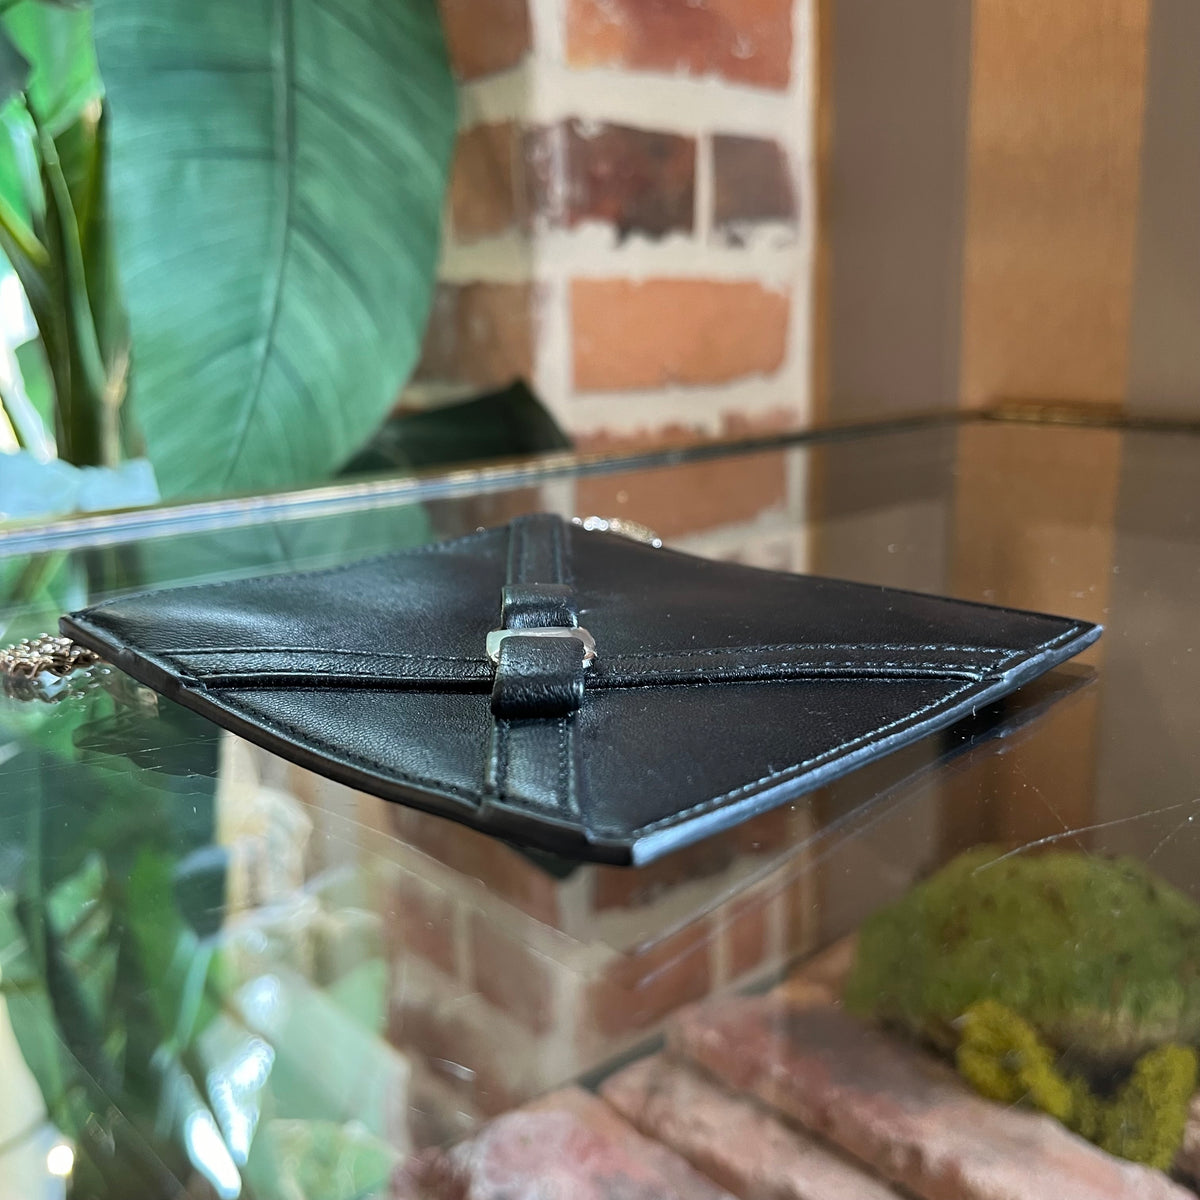 SALVATORE FERRAGAMO Black Leather Mini Chain Pouch Wallet